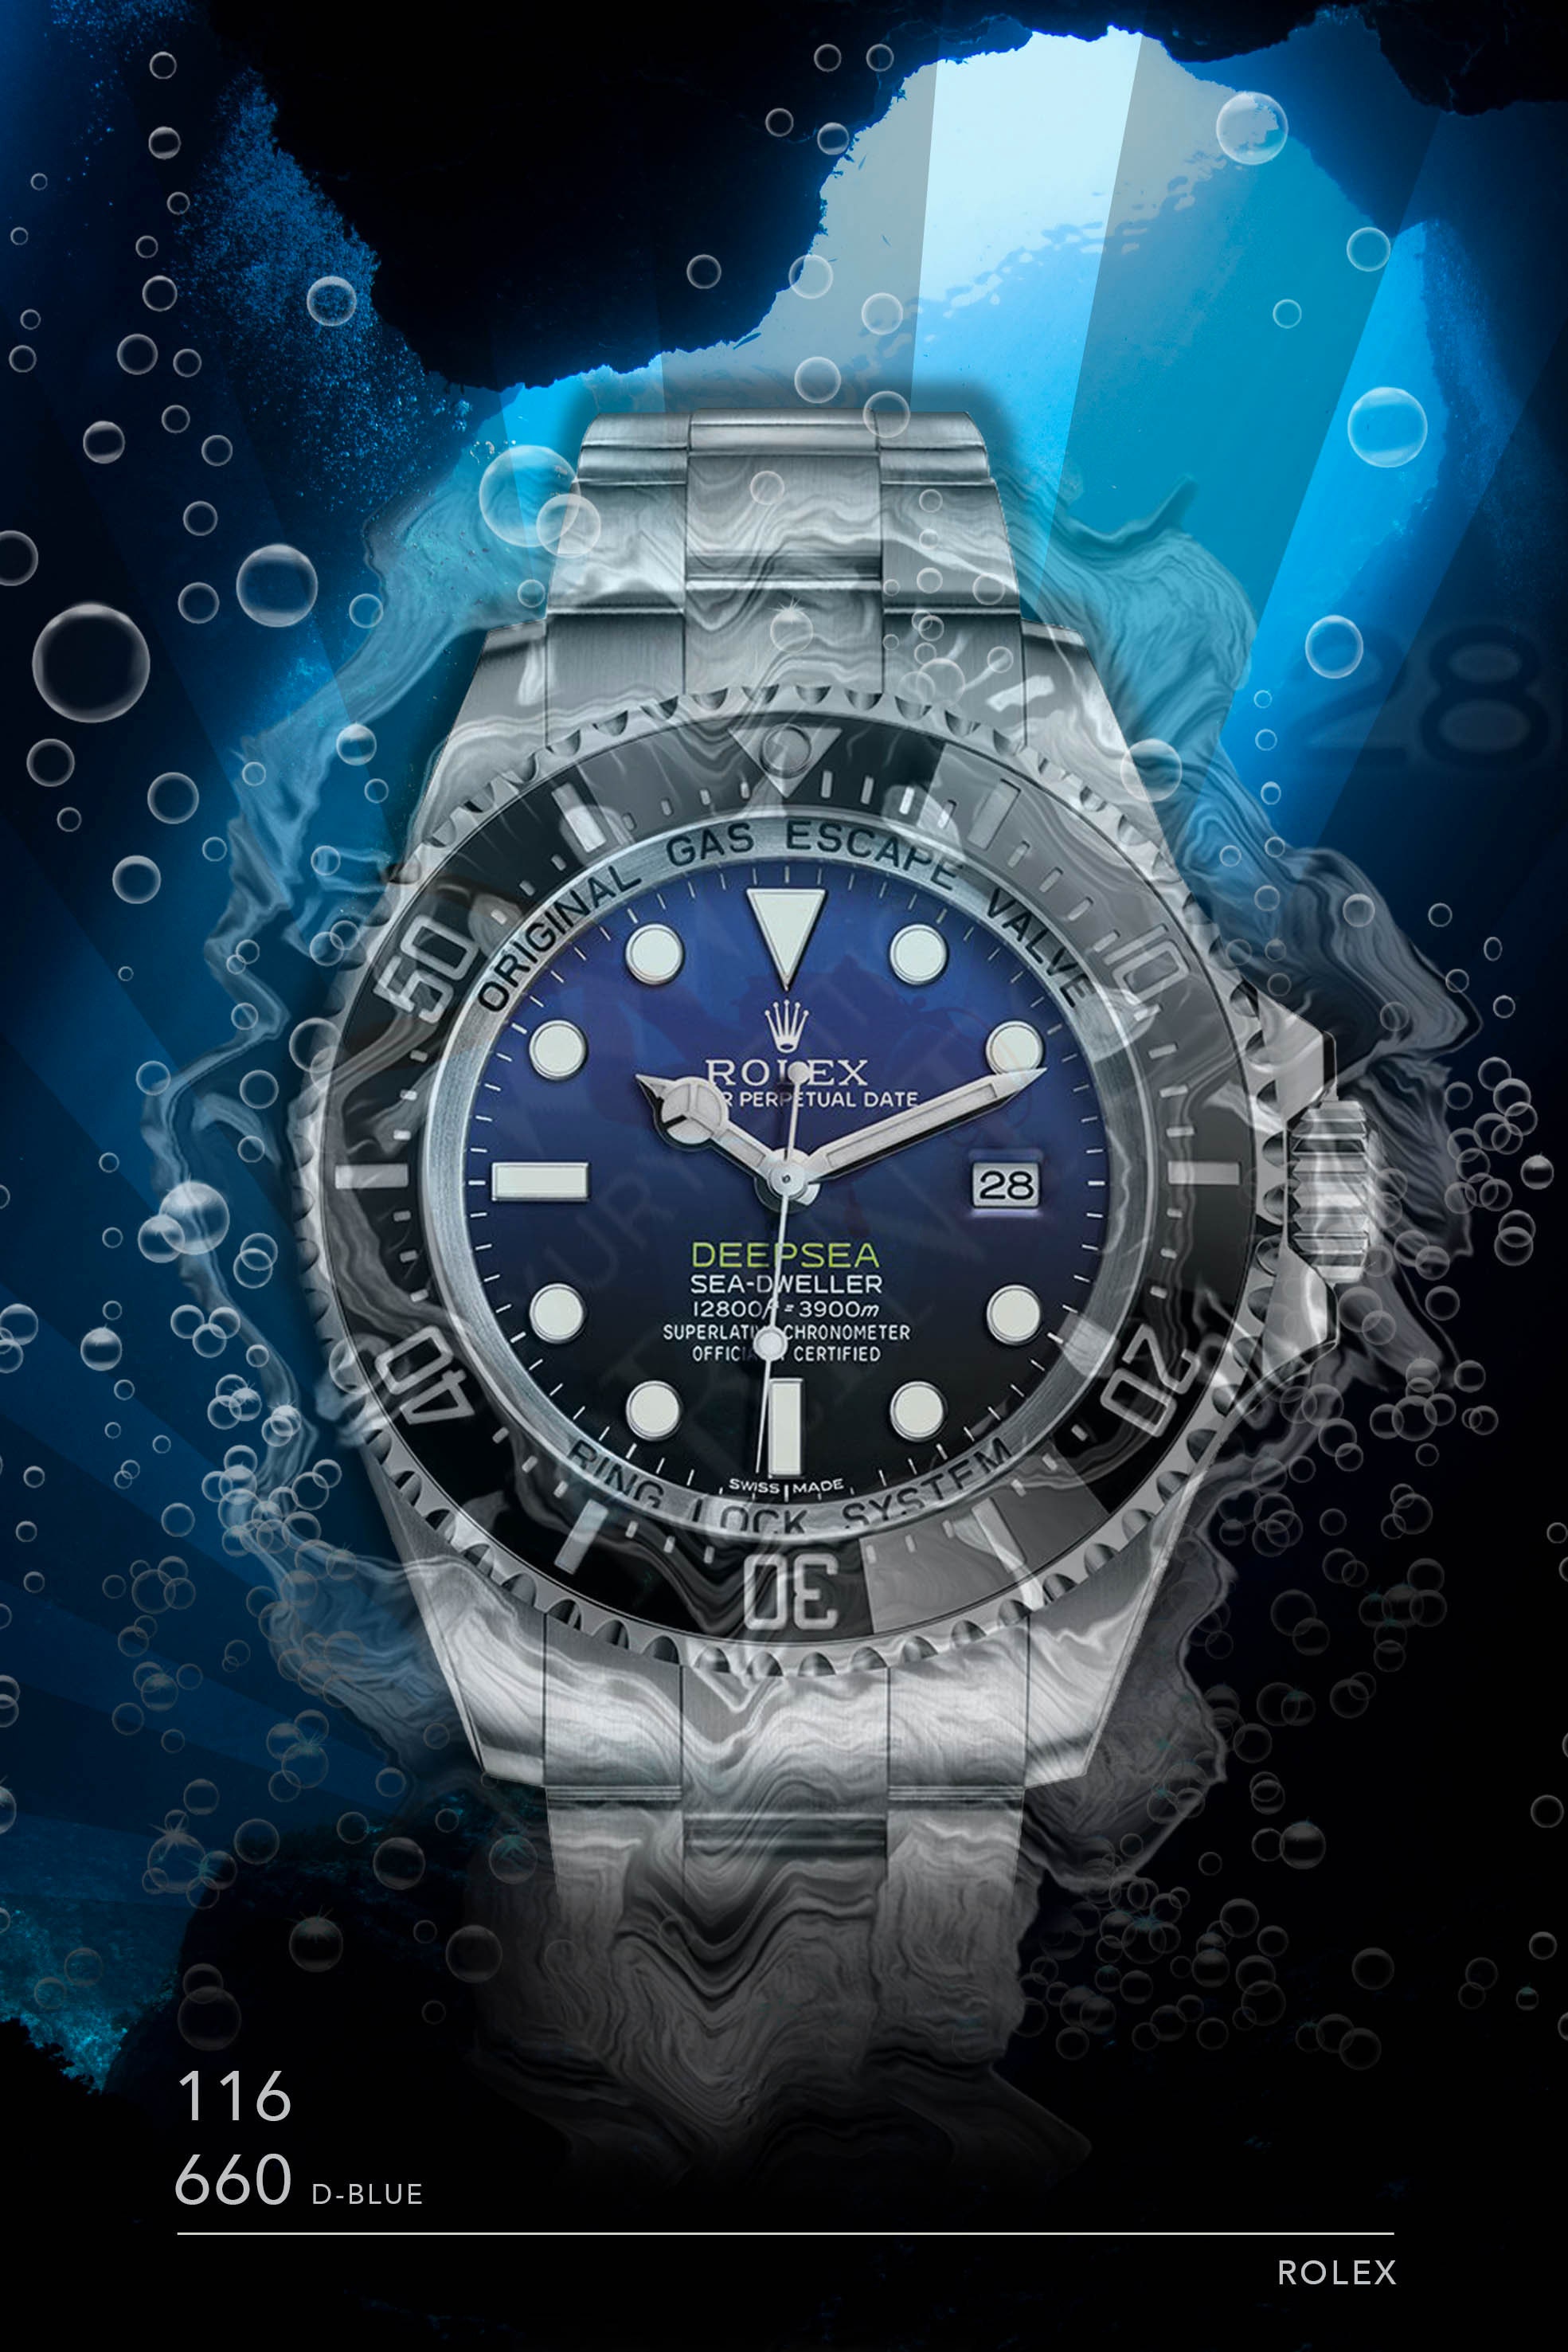 Rolex Submariner 16610LV kermit Watch Print on Canvas. Bold 